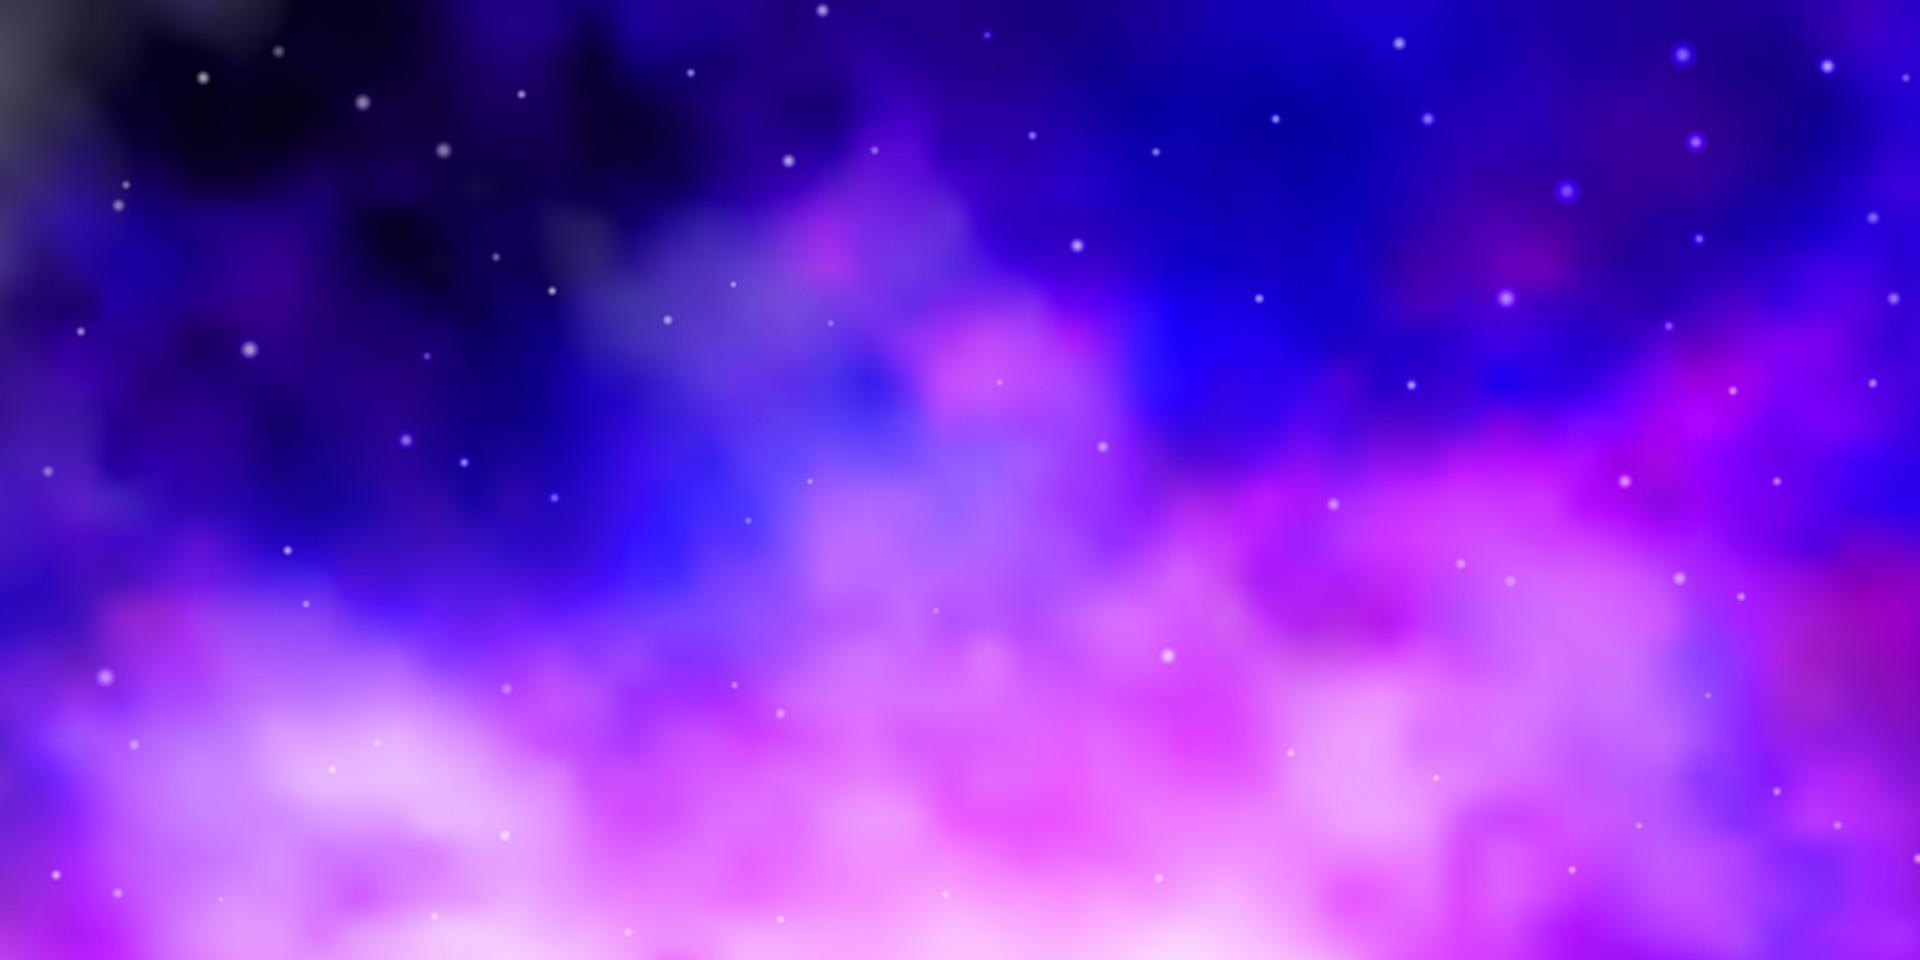 lichtpaarse, roze vectorachtergrond met kleine en grote sterren. vector